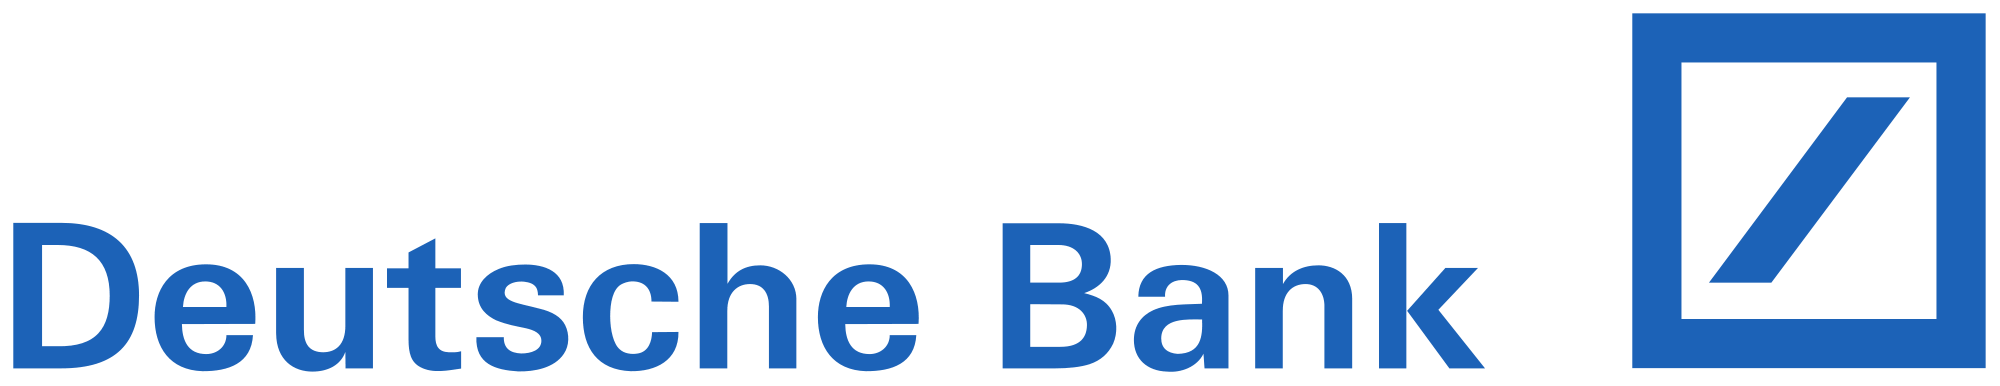 Deutsche Bank Baufinanzierung